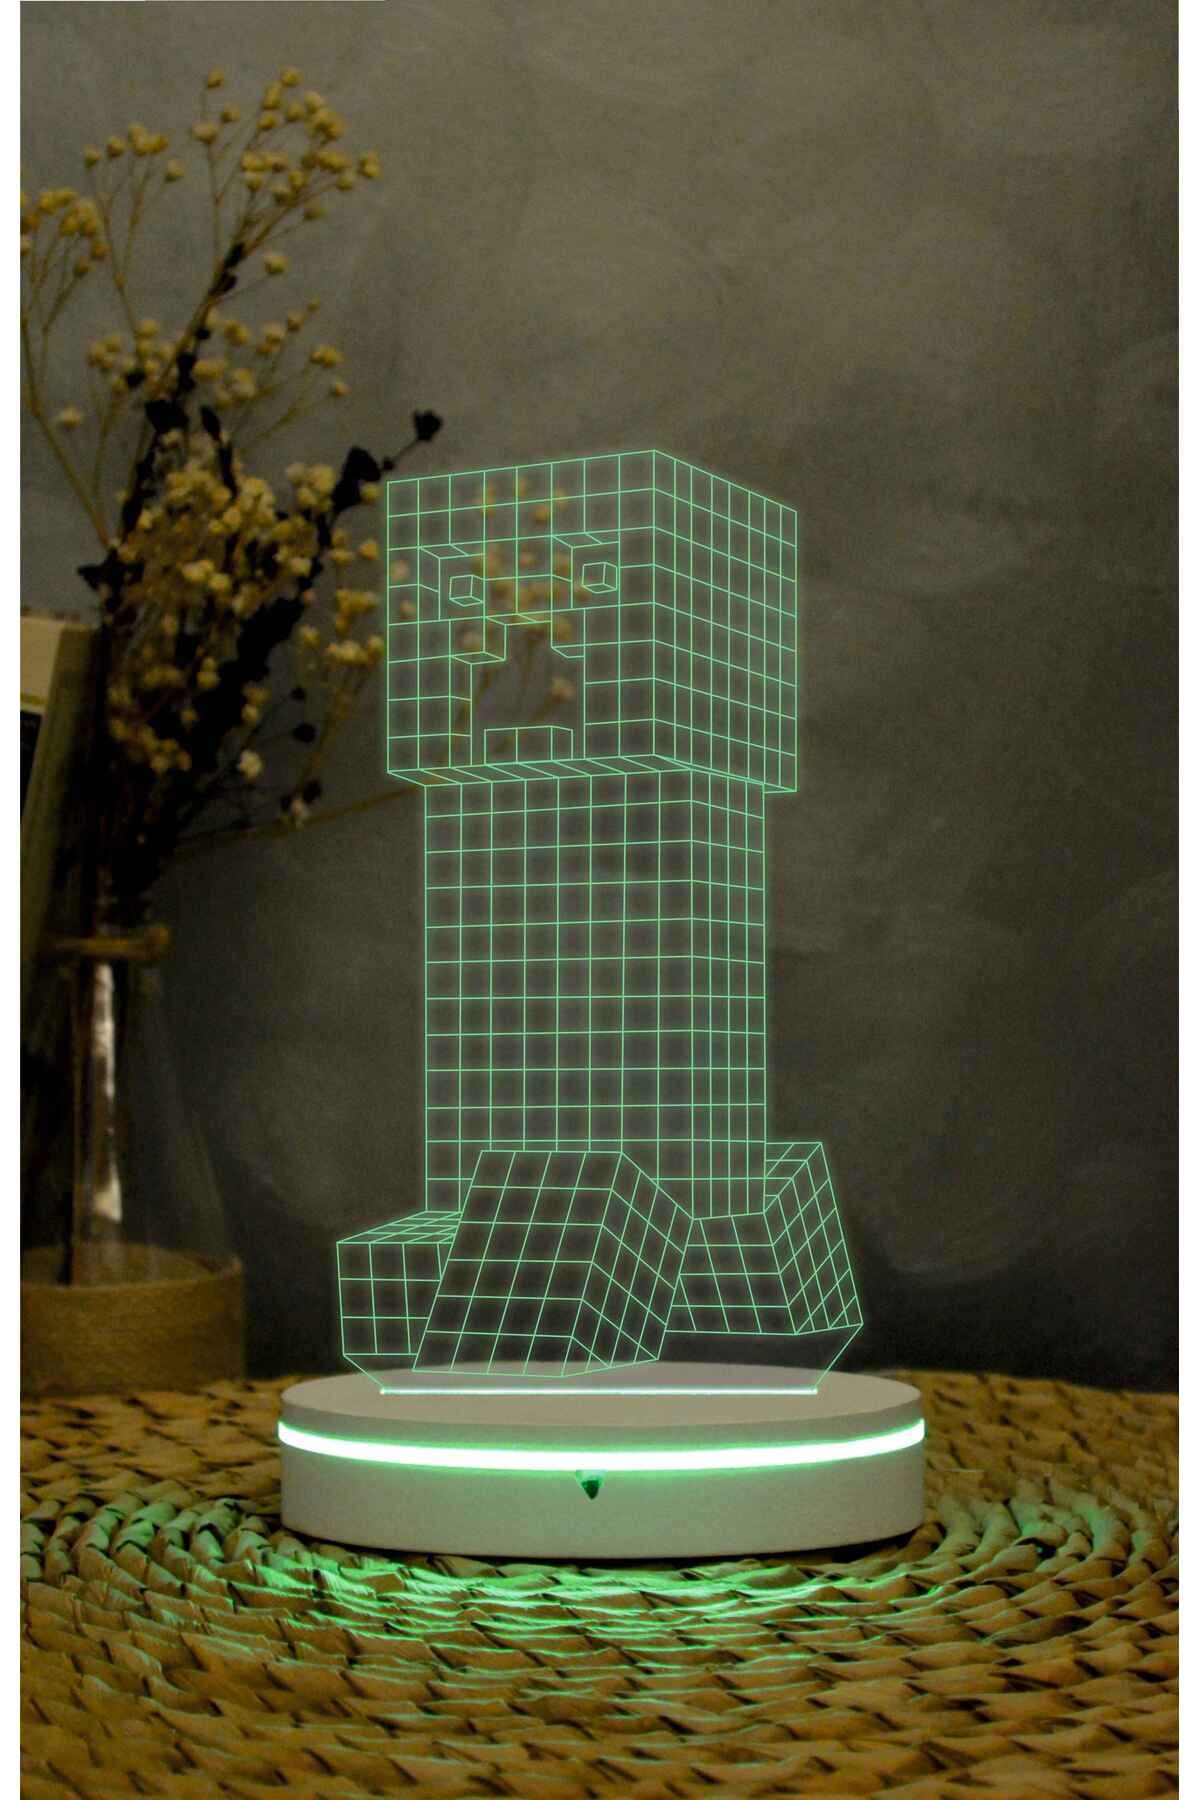 Yubi Design Creeper , Minecraft - 3 boyutlu led lamba 16 renk dekoratif anime gece lambası 3D